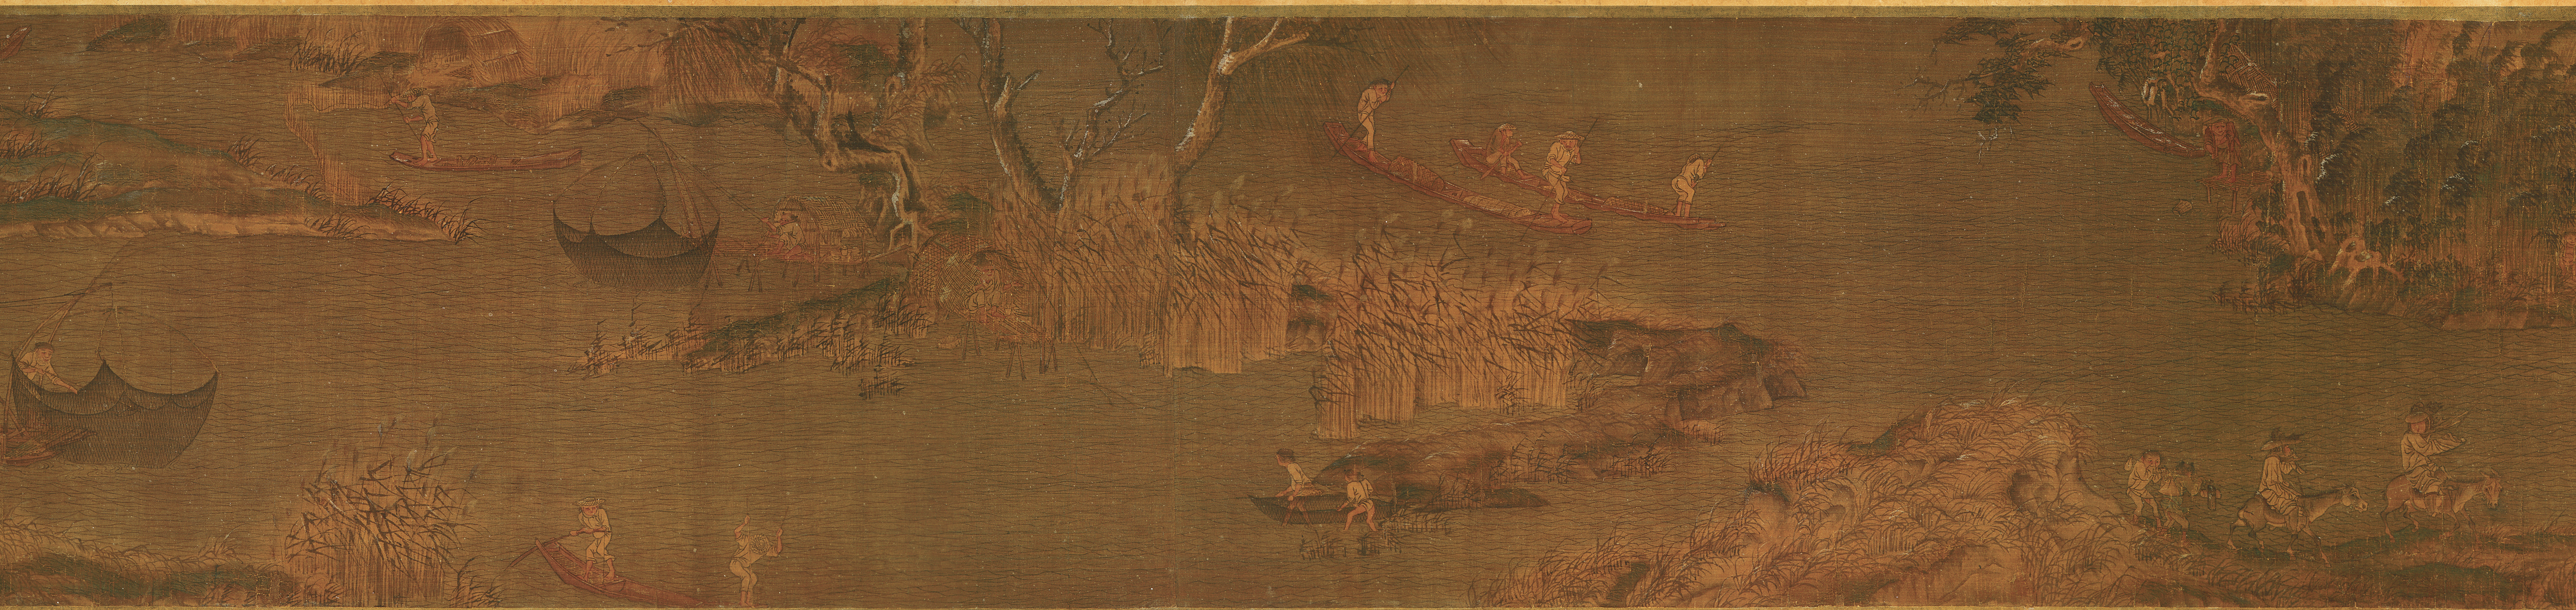 山水画:此画被人称宋画第一,范宽《溪山行旅图》赏析